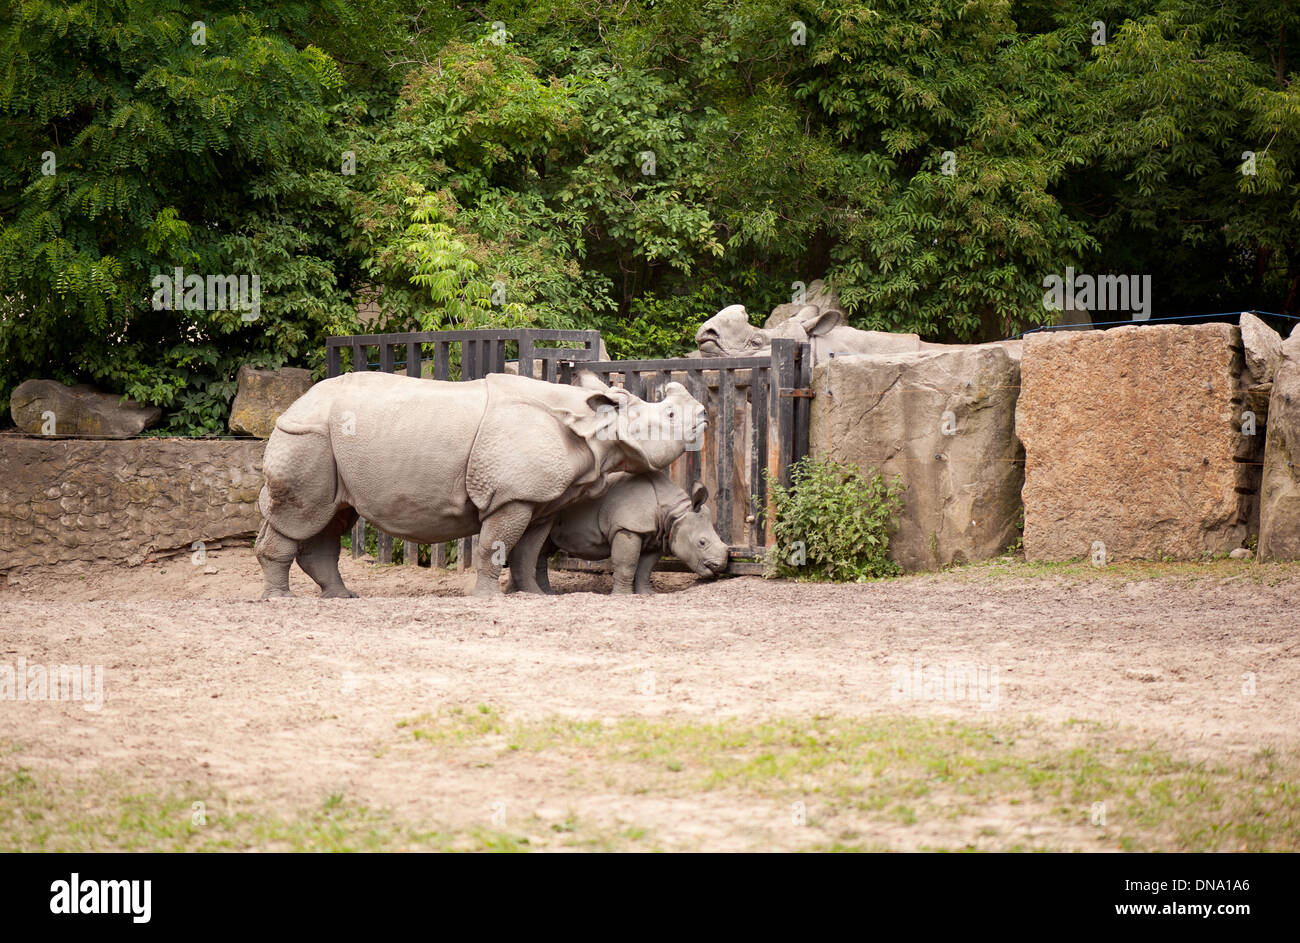 Rhinoceros remplit son zoo en famille Banque D'Images